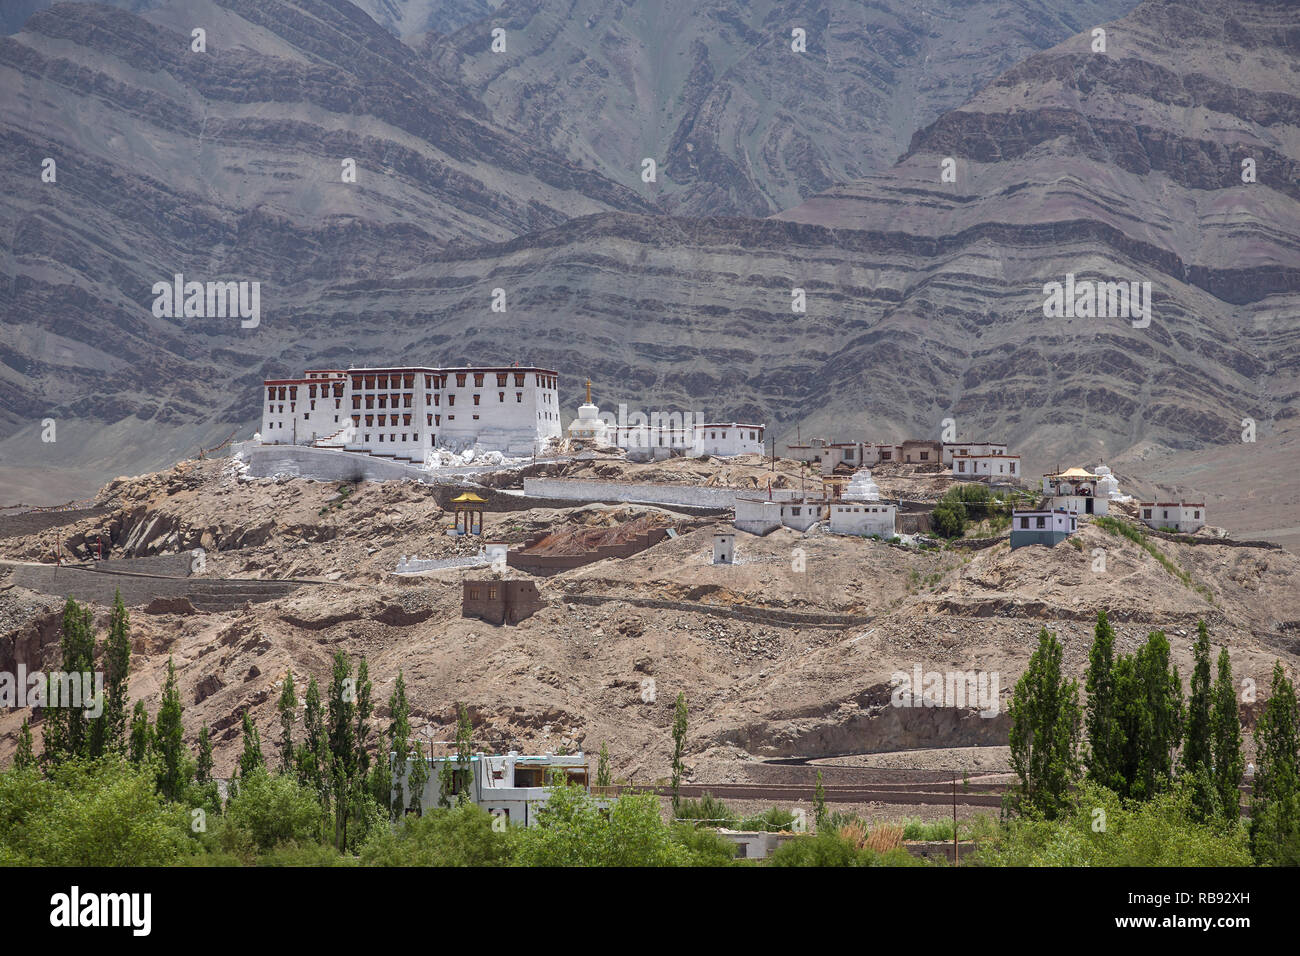 Stakna gompa Tempel (buddhistische Kloster) mit Blick auf den Himalaya in Leh, Ladakh, Jammu und Kaschmir, Indien. Stockfoto